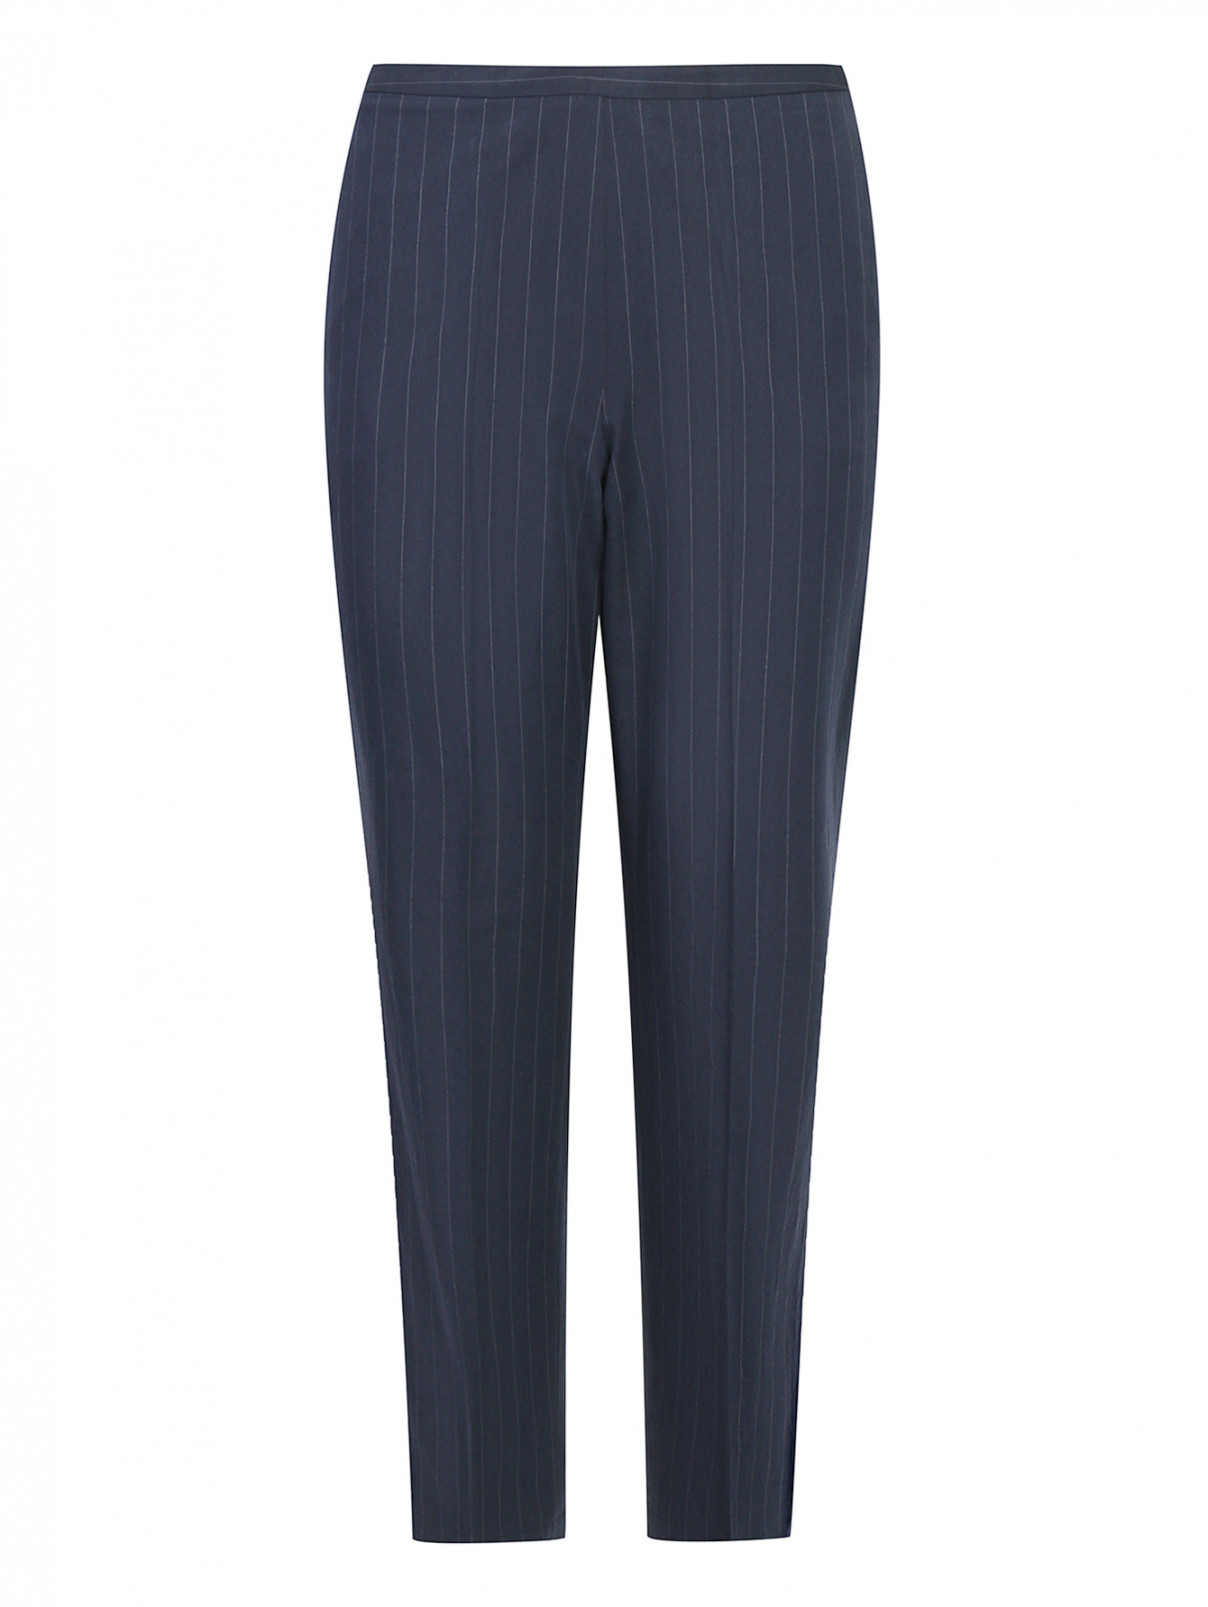 Укороченные брюки из хлопка и шерсти Antonio Marras  –  Общий вид  – Цвет:  Узор